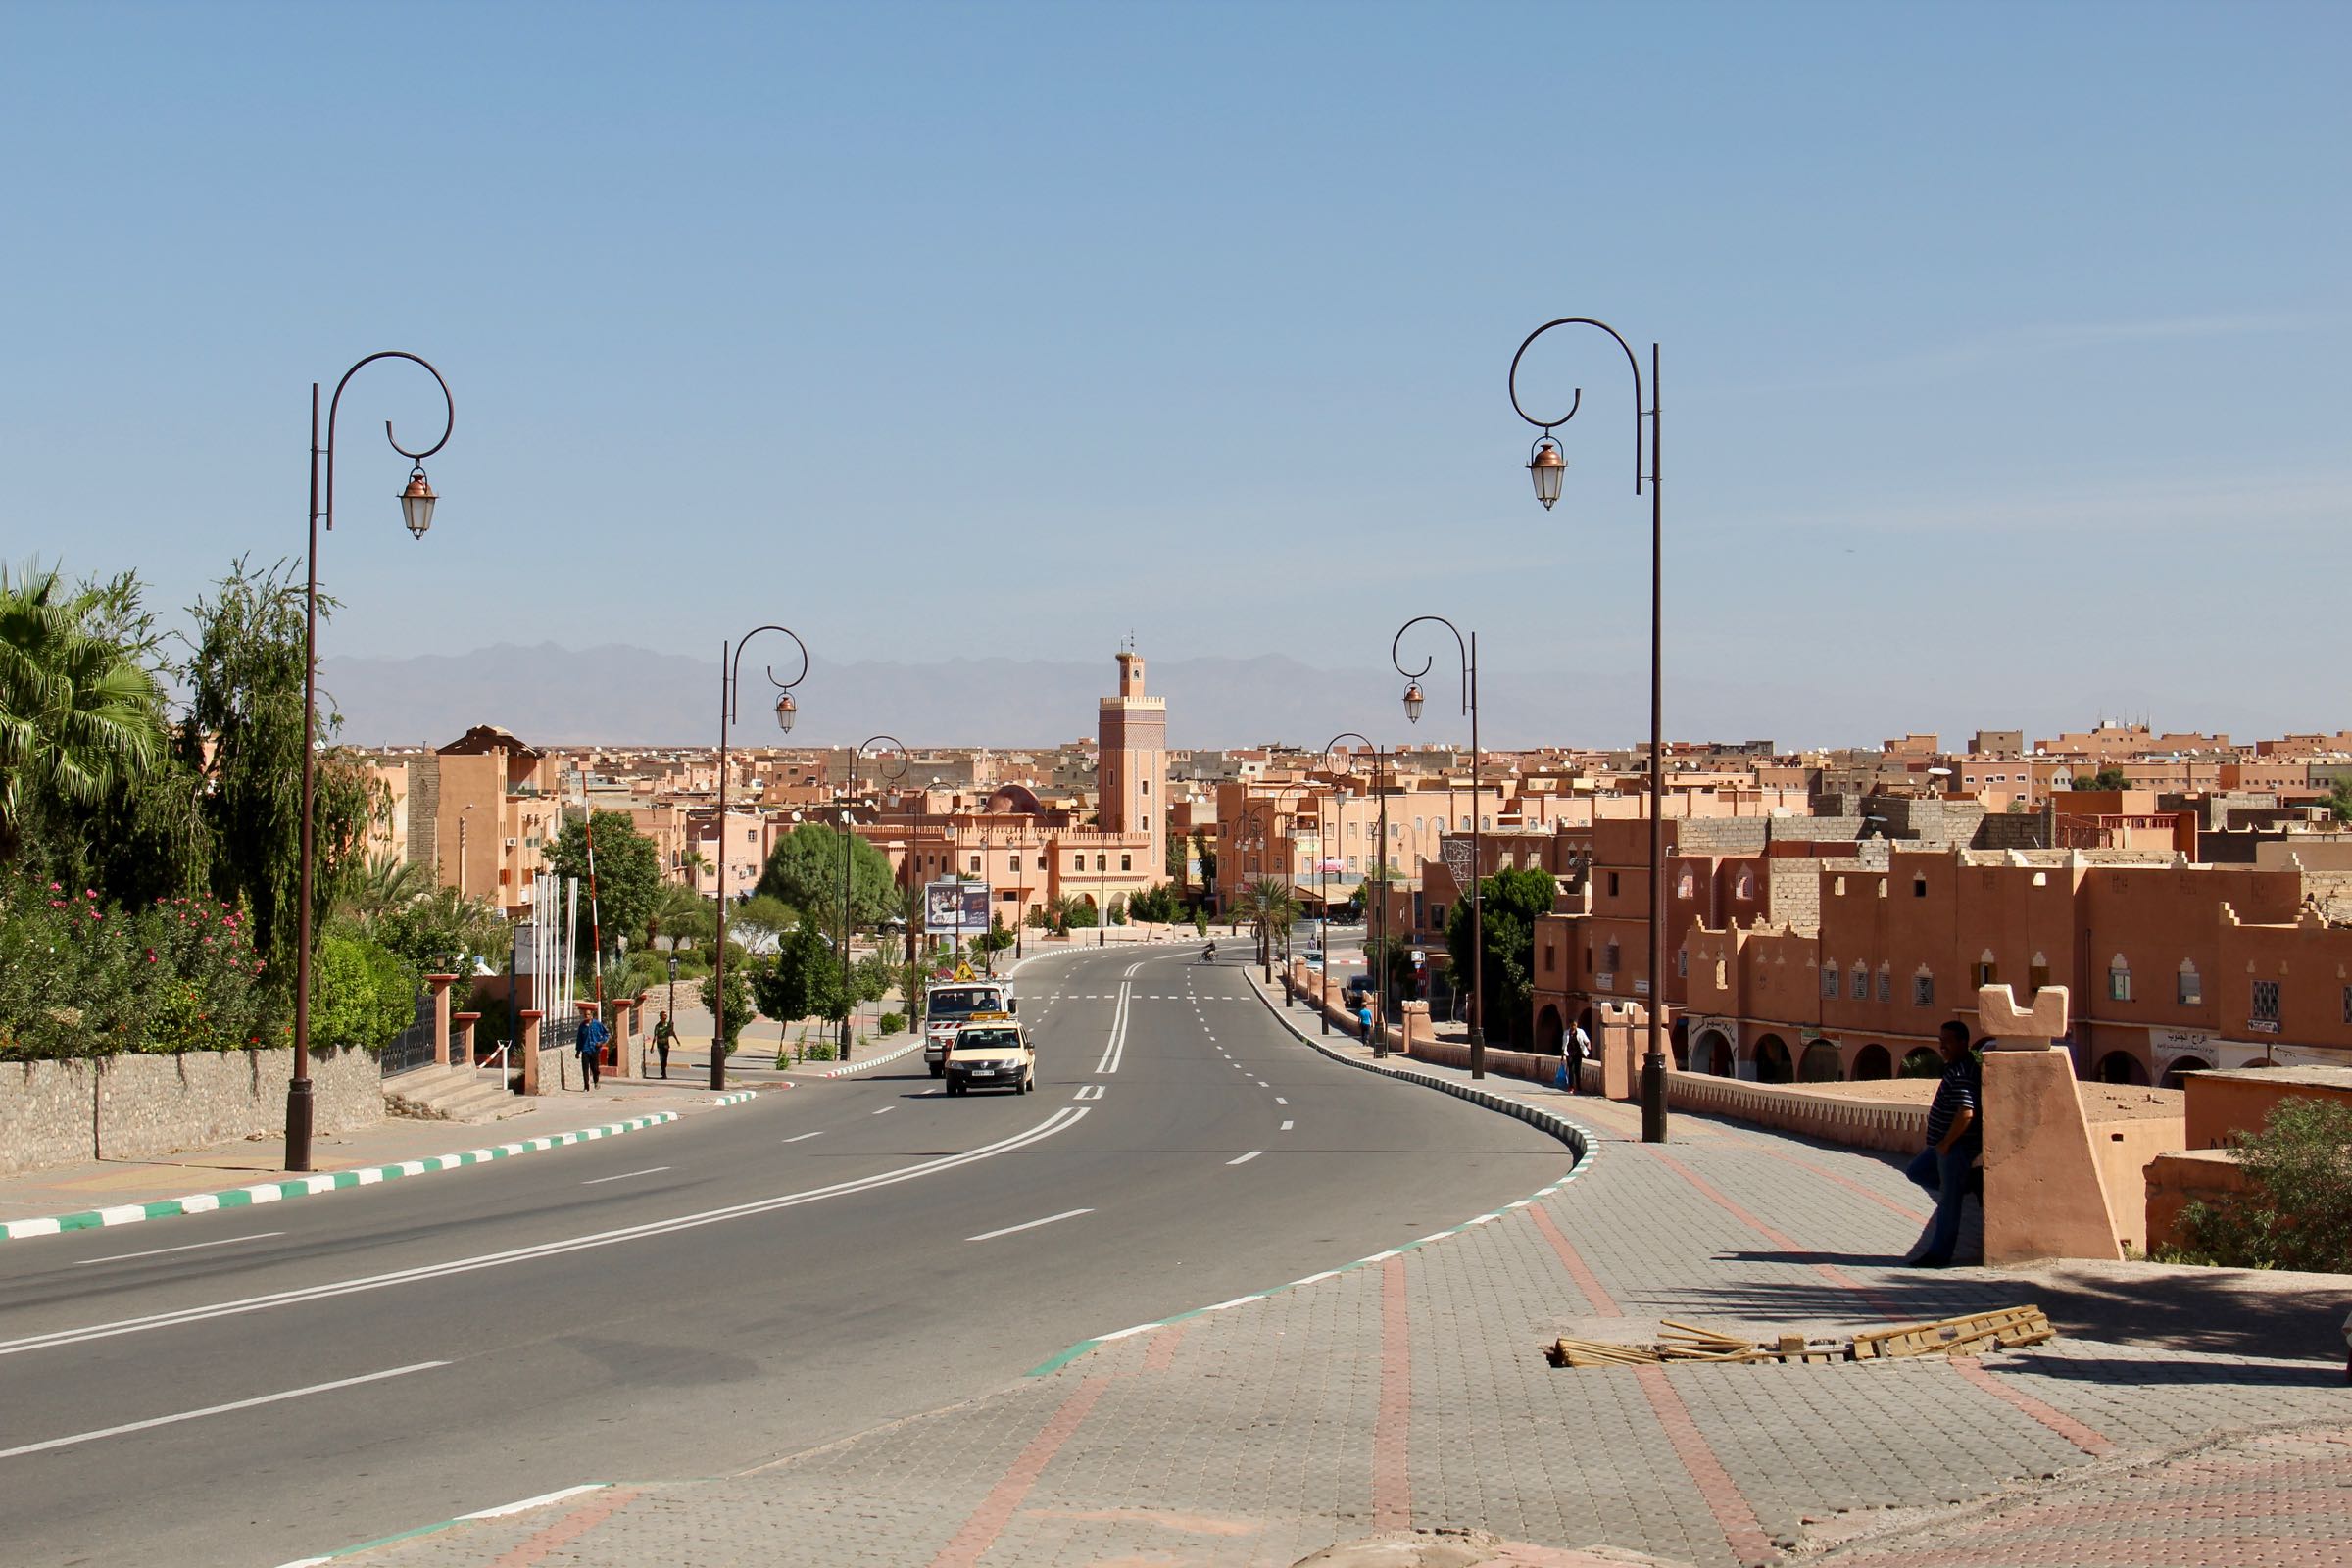 Straße in Ouarzazate, Marokko